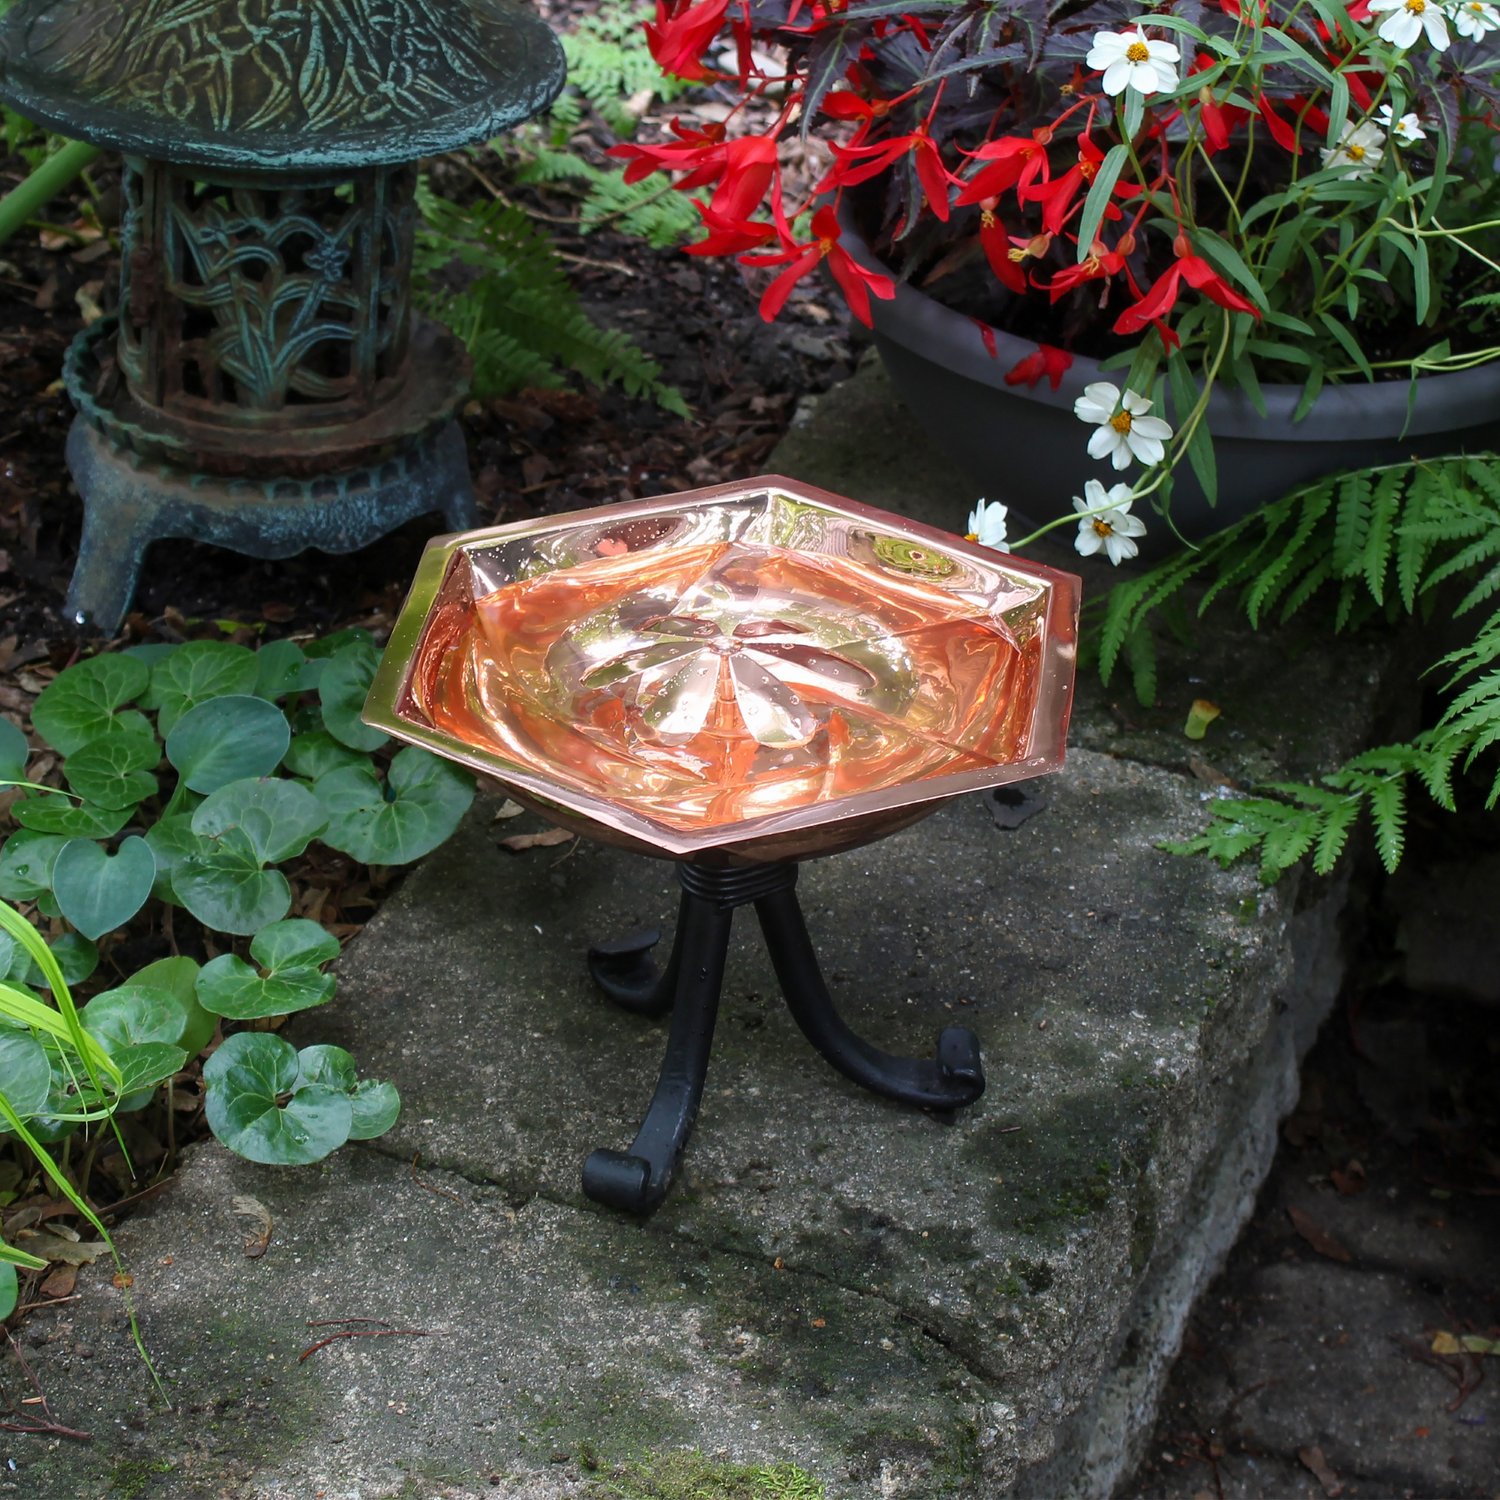 Achla Bee Fountain & Birdbath with Tripod Stand